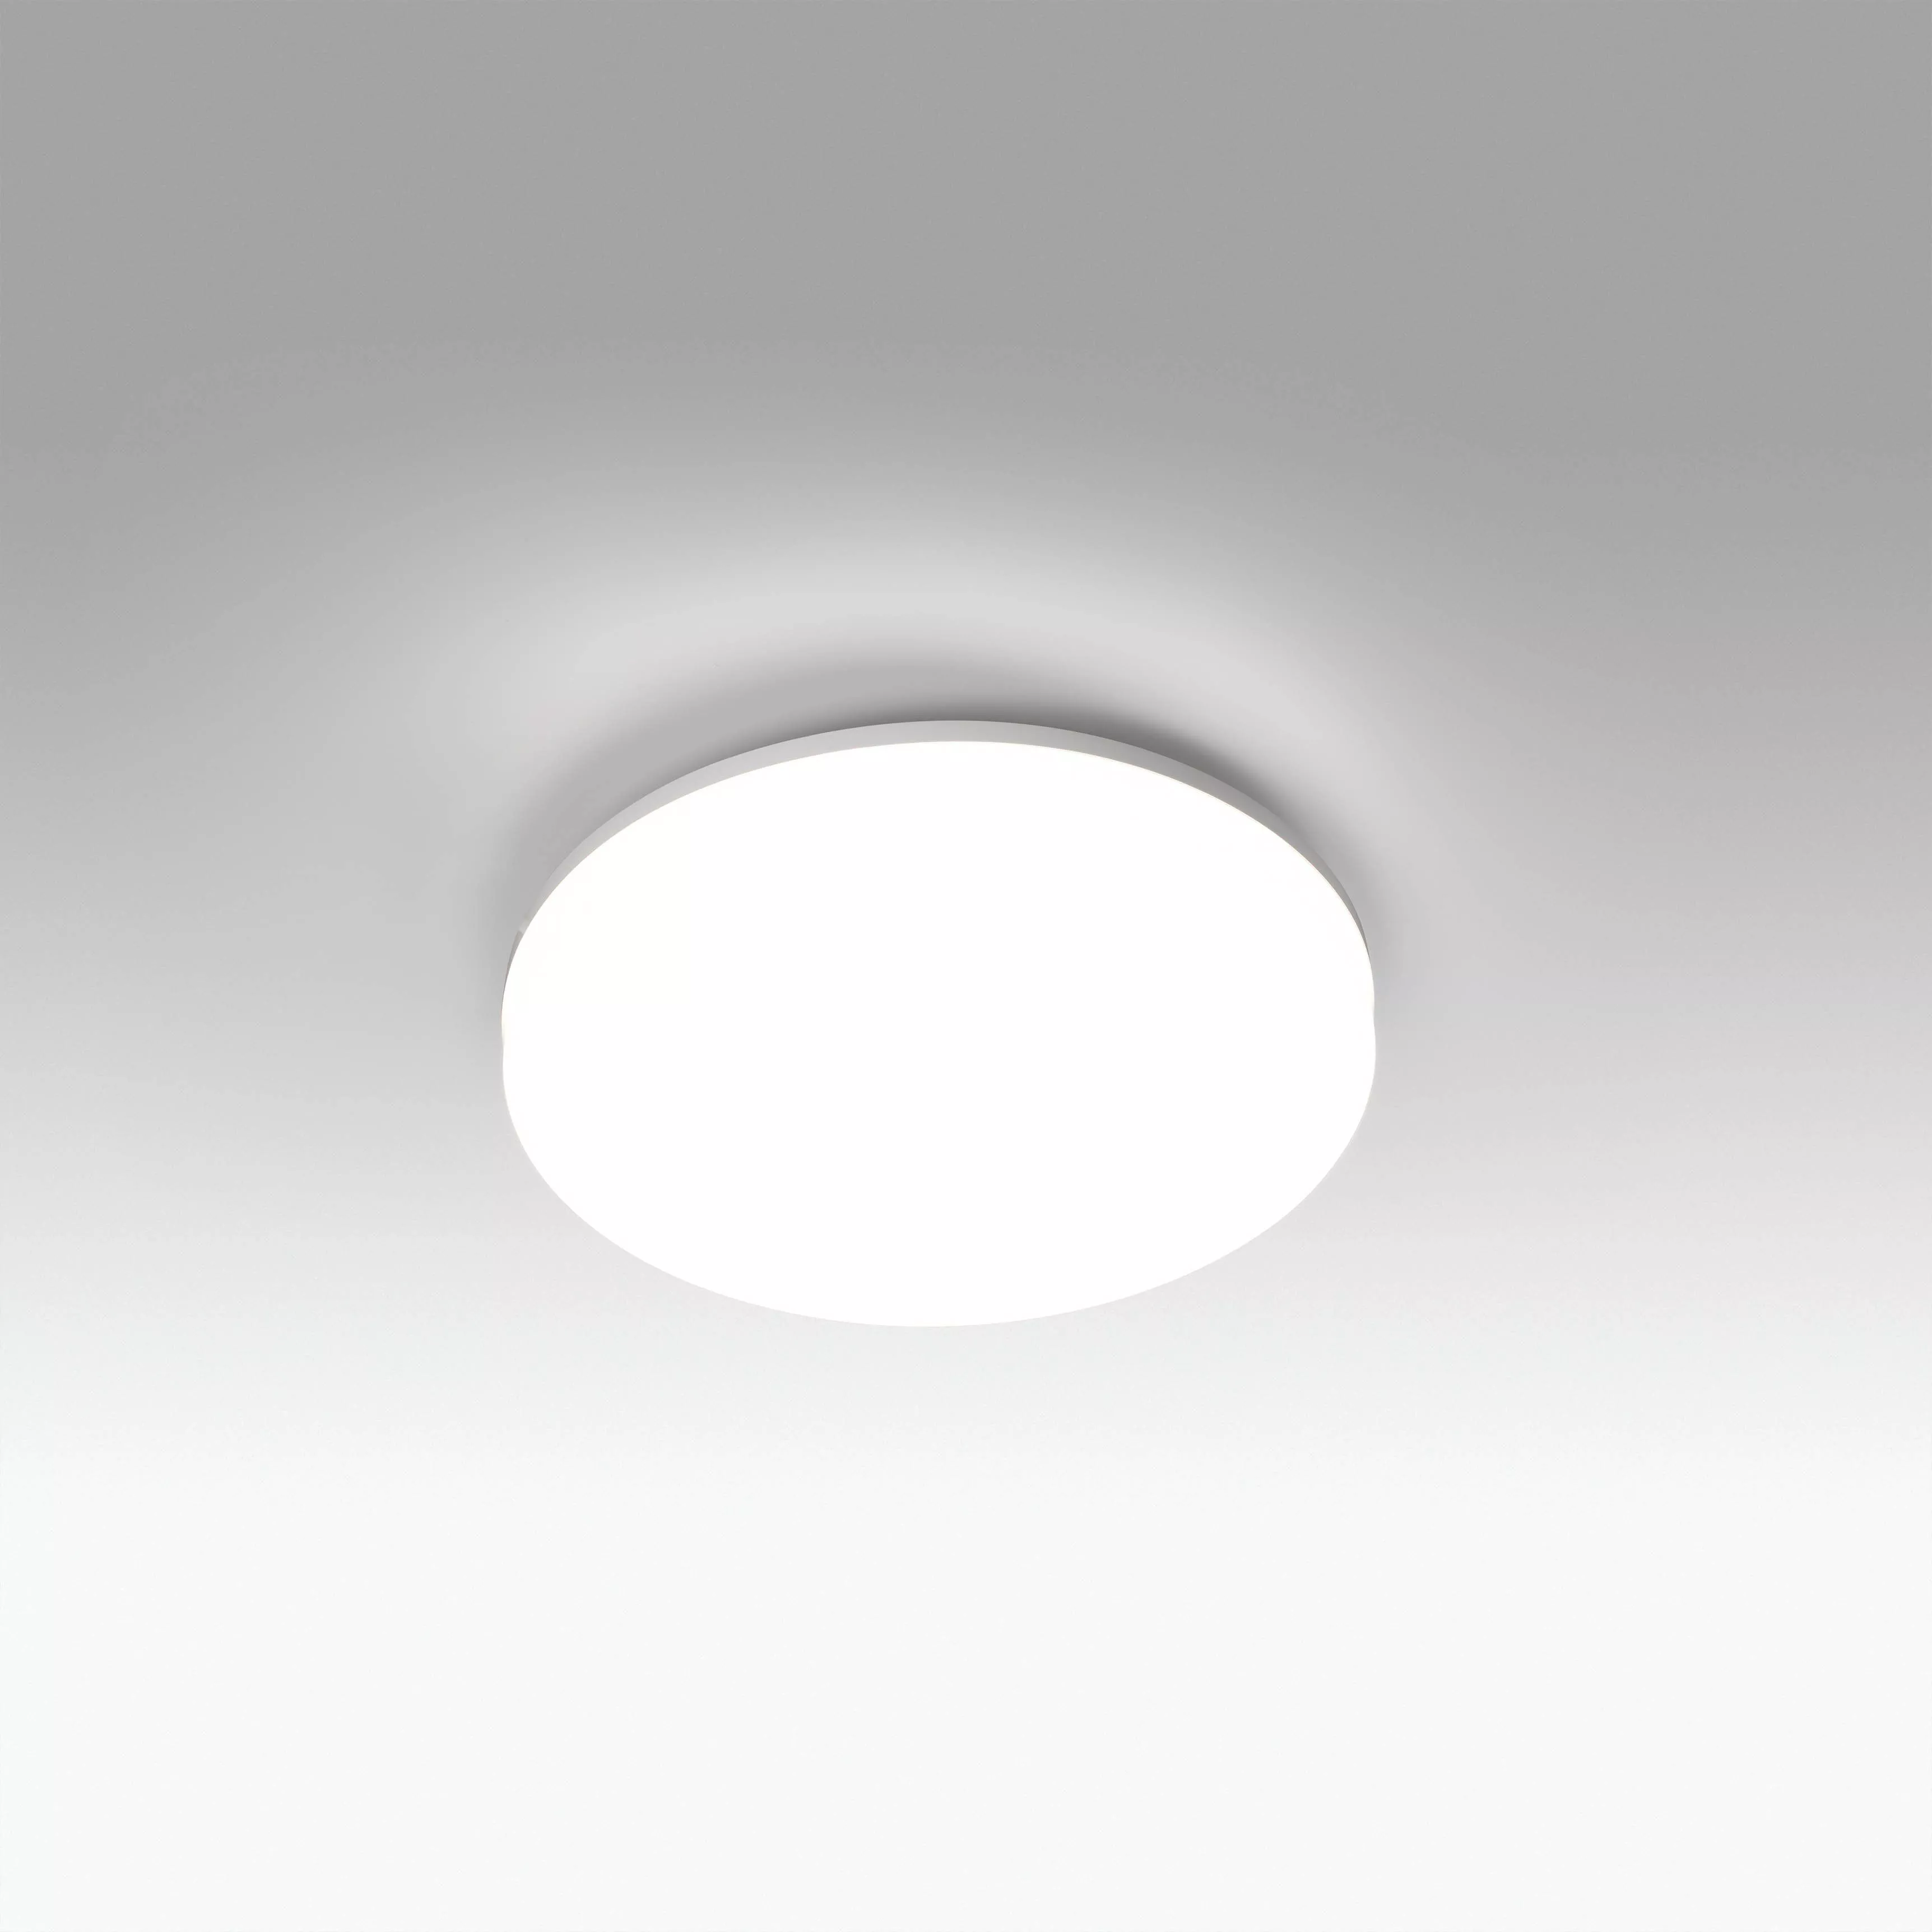 Влагозащищенный потолочный светильник ZON Faro 63291